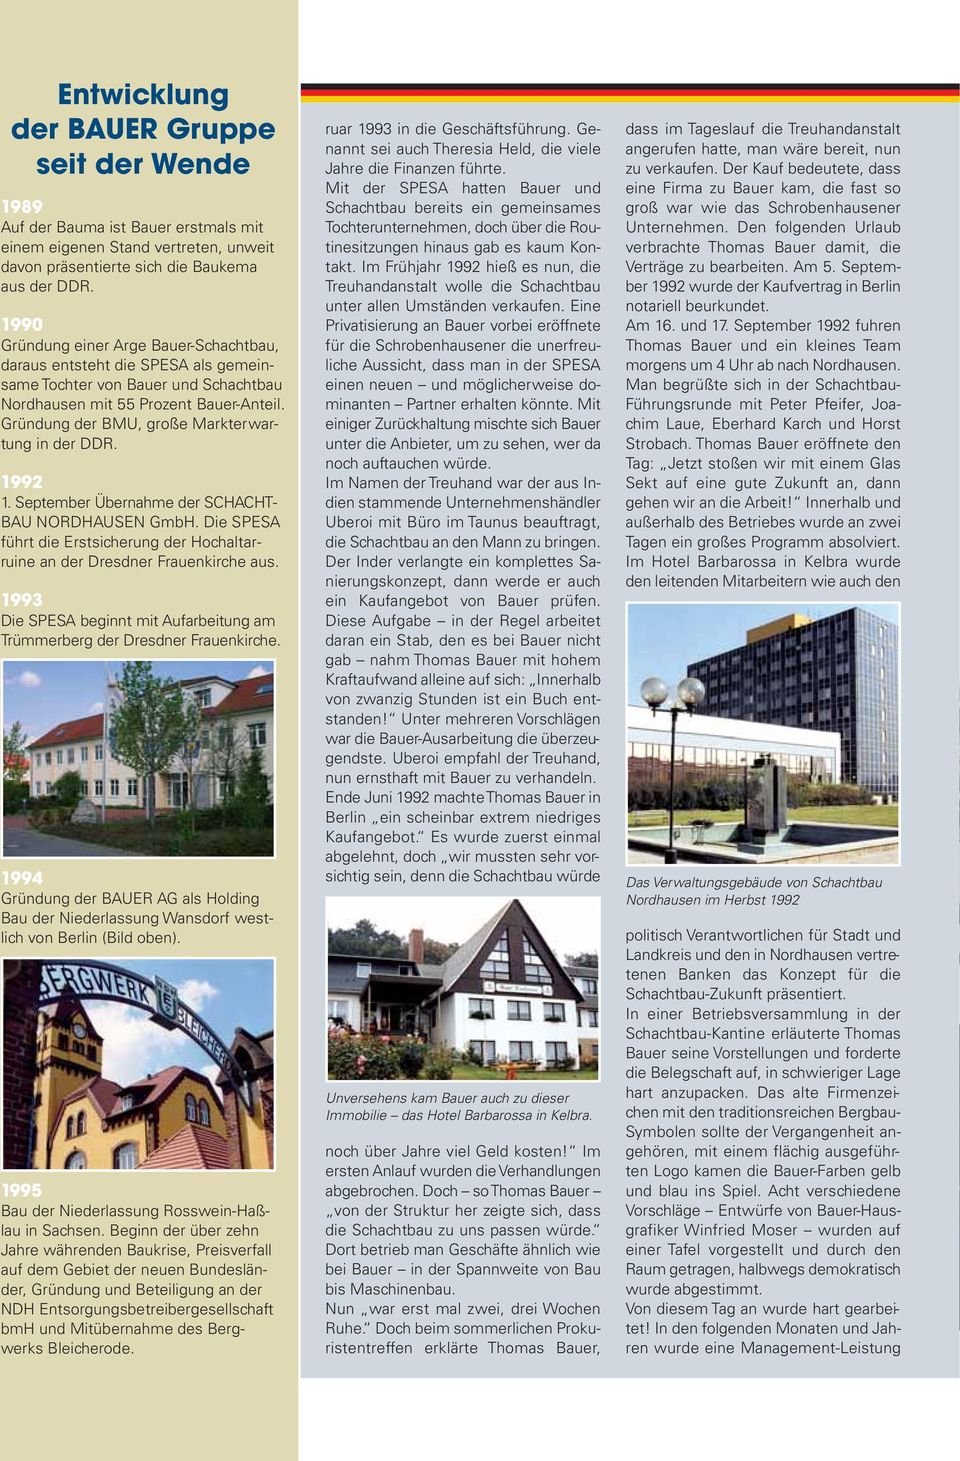 Gründung der BMU, große Markterwar - tung in der DDR. 1992 1. September Übernahme der SCHACHT - BAU NORDHAUSEN GmbH.